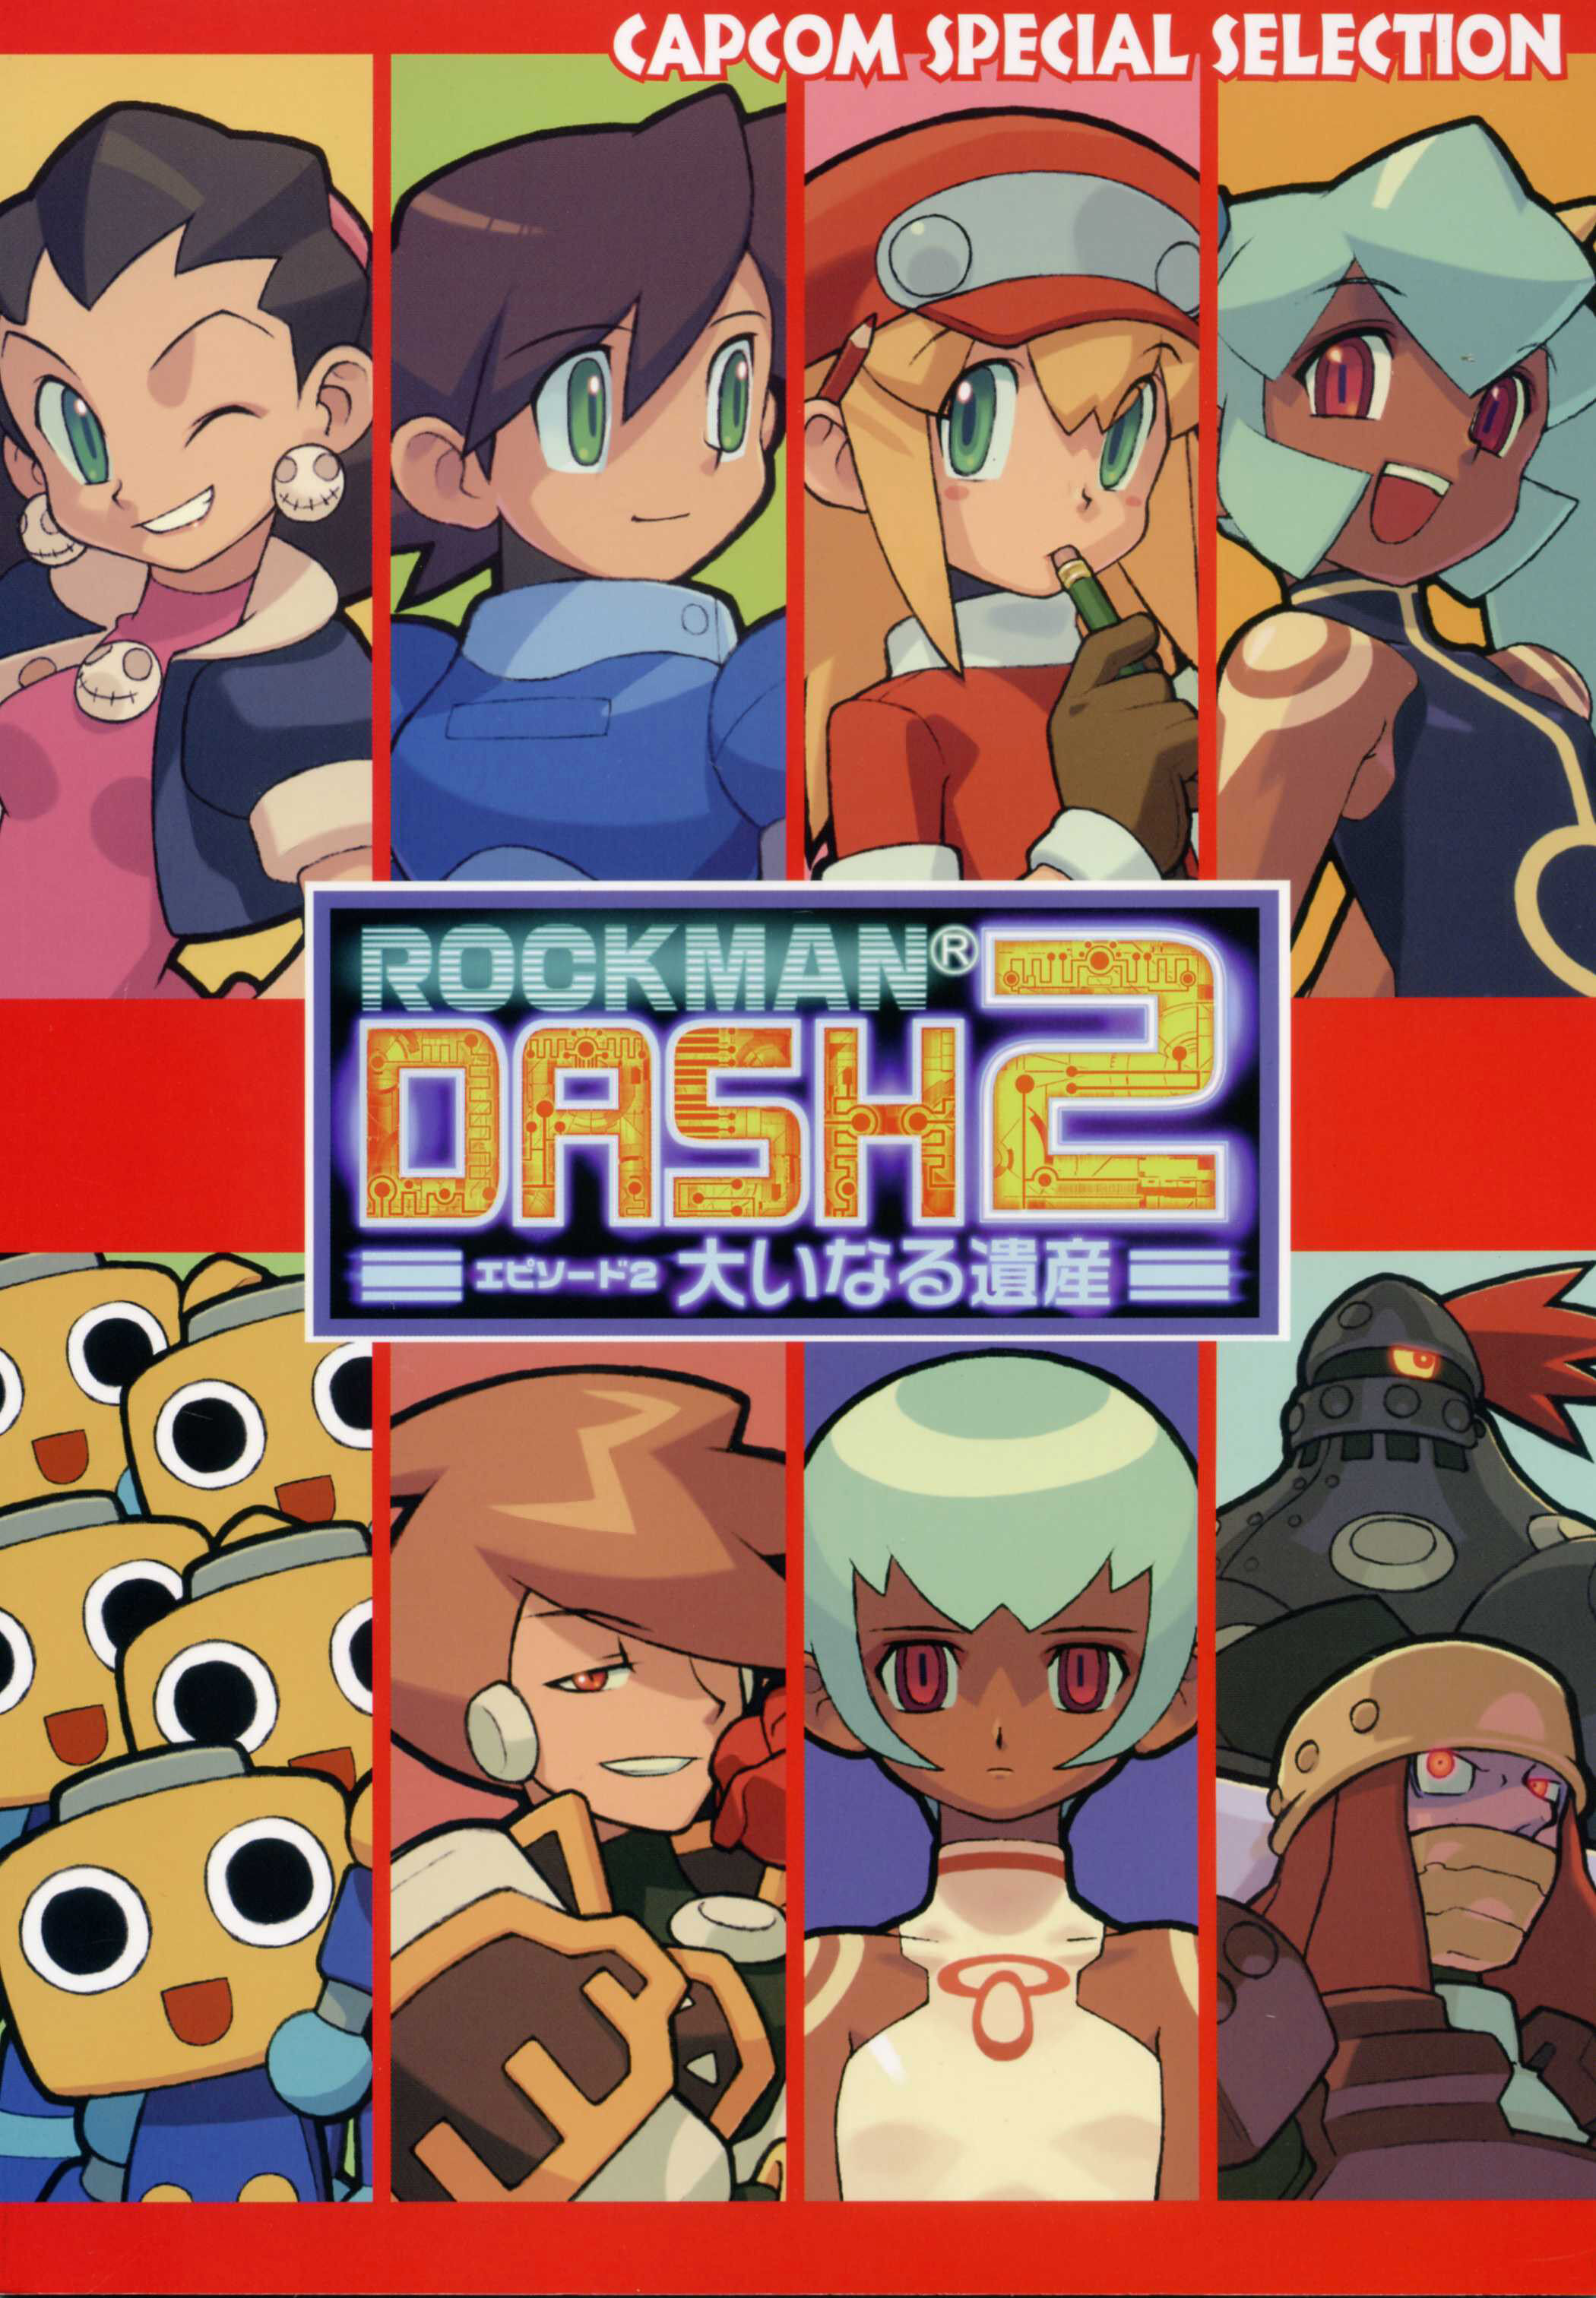 Capcom Special Selection: Rockman DASH 2 | MMKB | Fandom